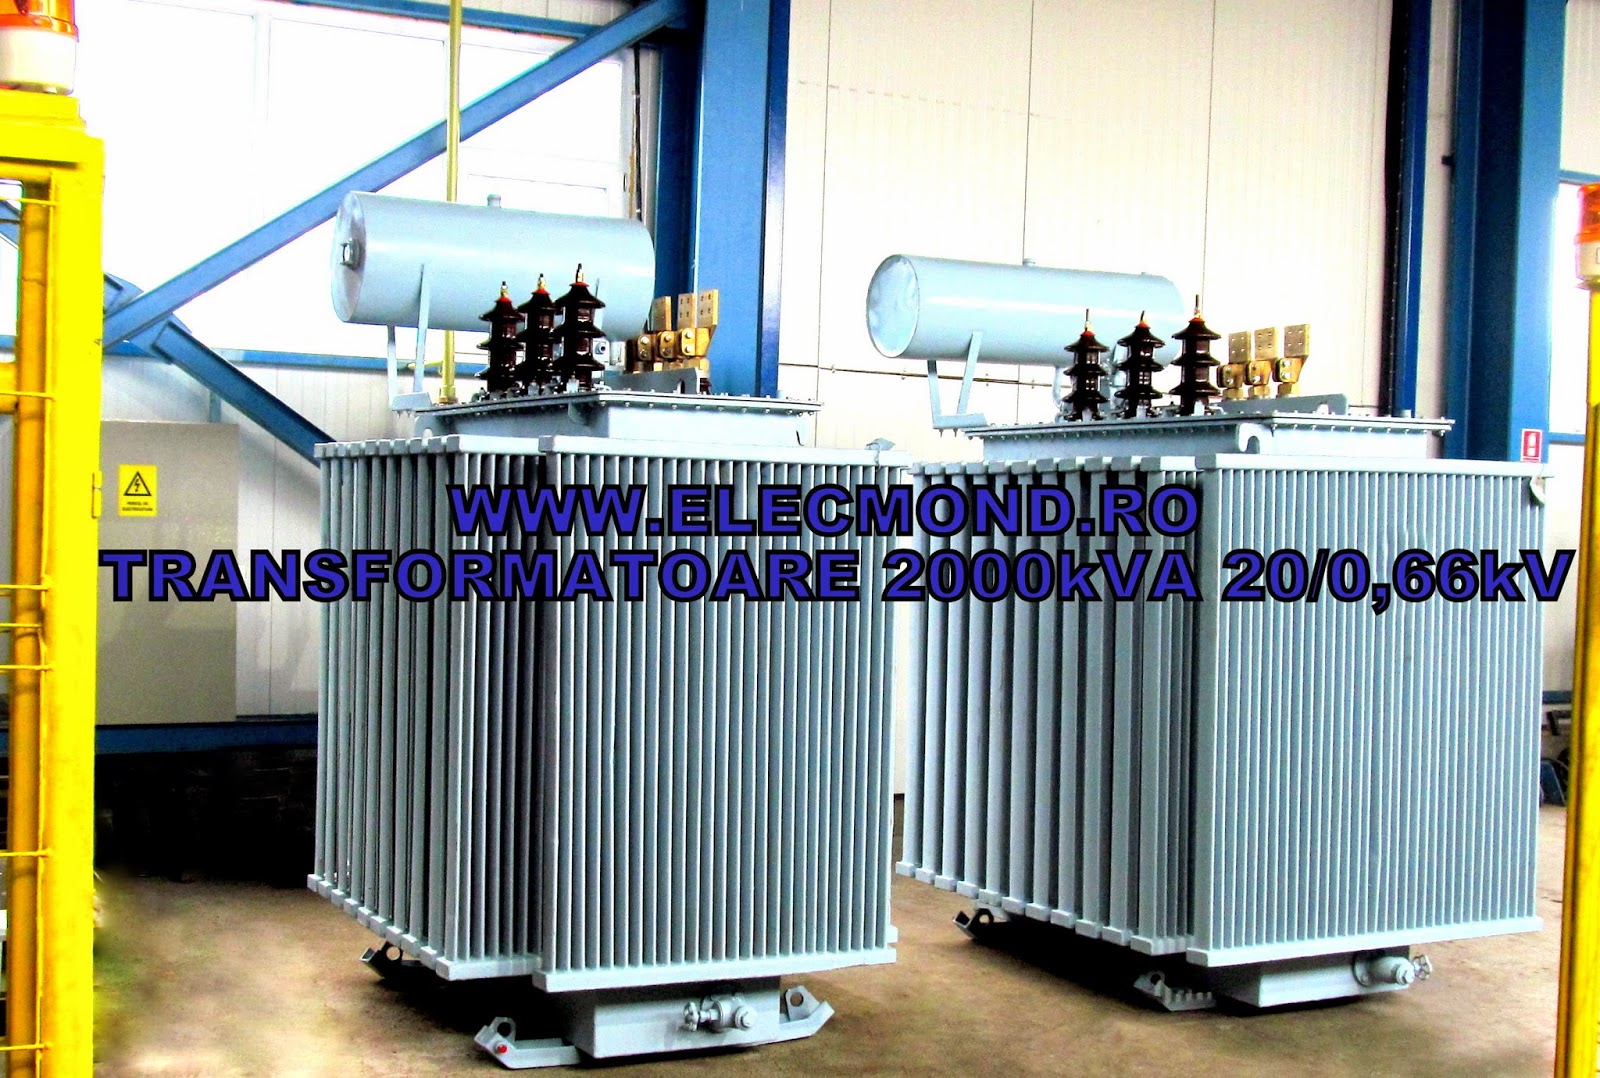 Transformatoare 2000 kVA 20/0,66kV , transformator 2 MVA 20/0,66kV  , transformatoare Elecmond Electric , trafo 2 MVA , transformatoare 2000 kVA , ELECMOND